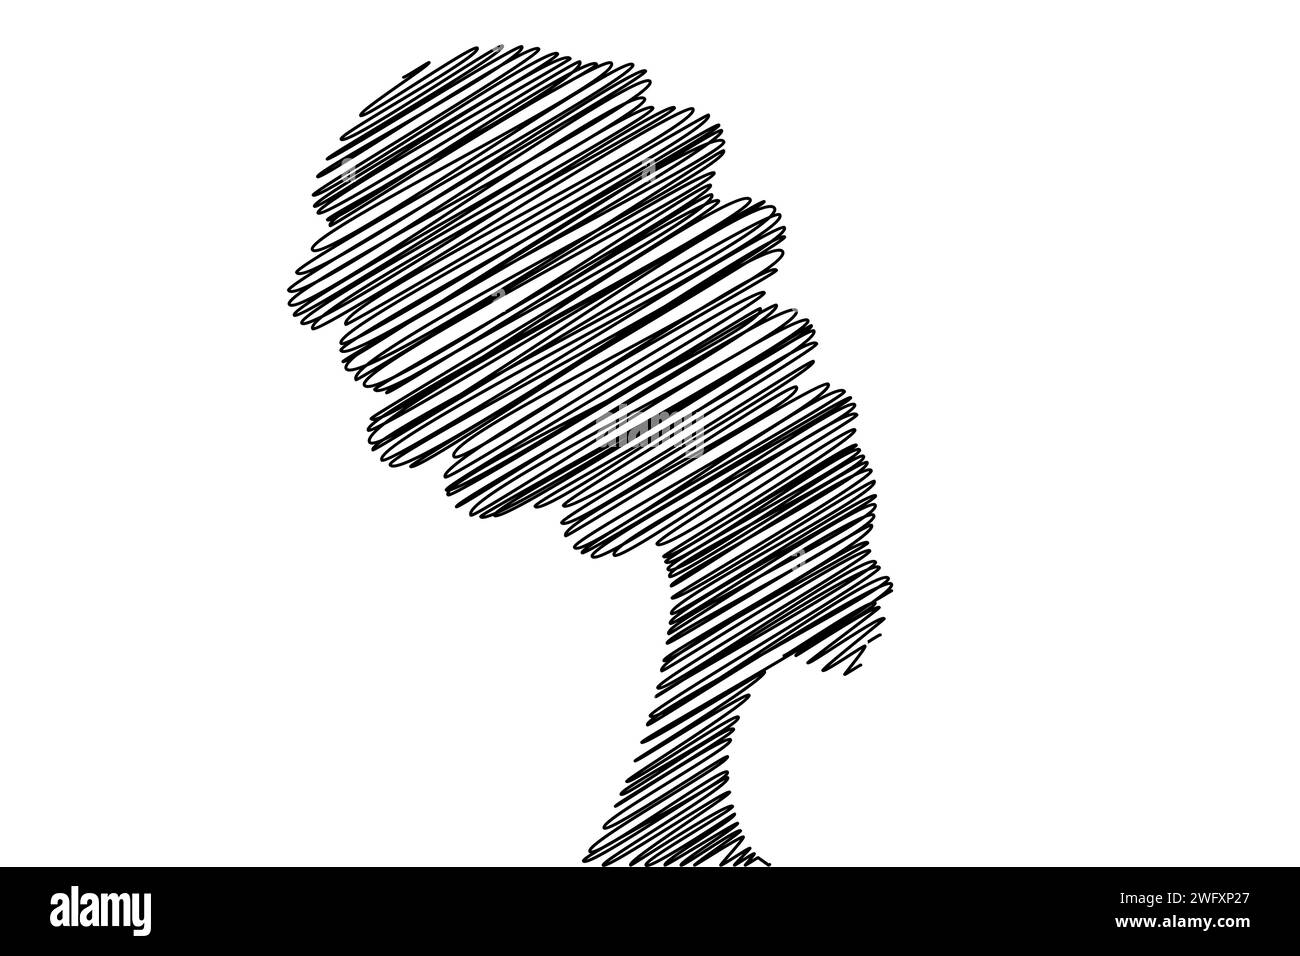 Porträt afrikanischer Frau in ethnischem Turban im Scribble-Stil, handgezeichnete schwarze Frau Logo-Silhouette. Schönheit, Frisur, Salonkonzept, Vektor Stock Vektor